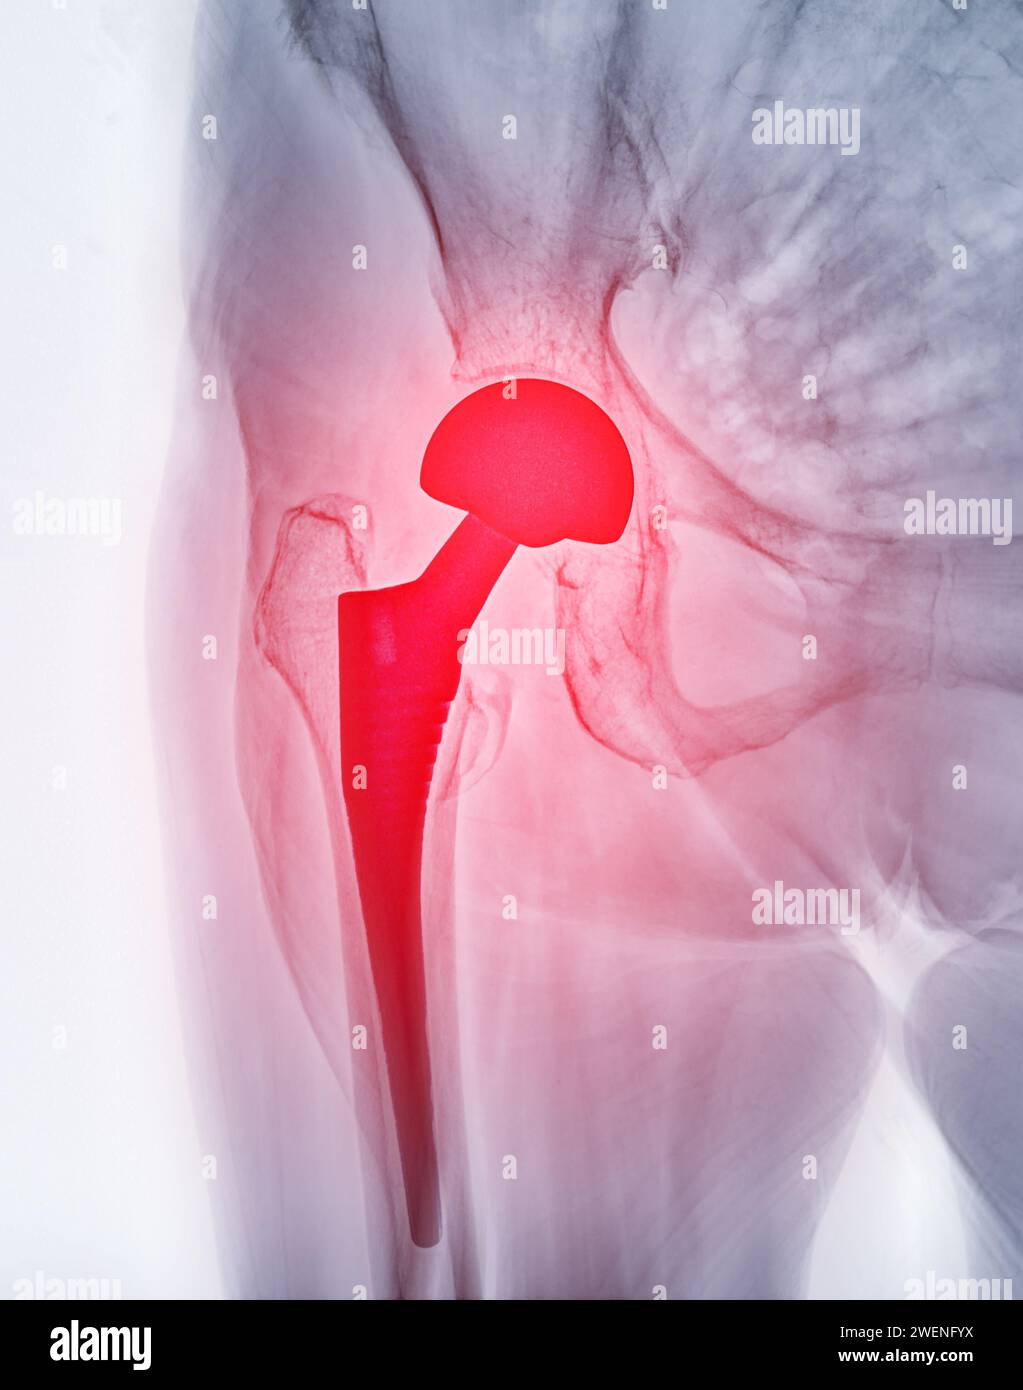 Una radiografia rivela entrambe le articolazioni dell'anca con ARTROPLASTICA DELL'ANCA TOTALE, dimostrando il successo della procedura chirurgica e fornendo un testamento visivo al Foto Stock